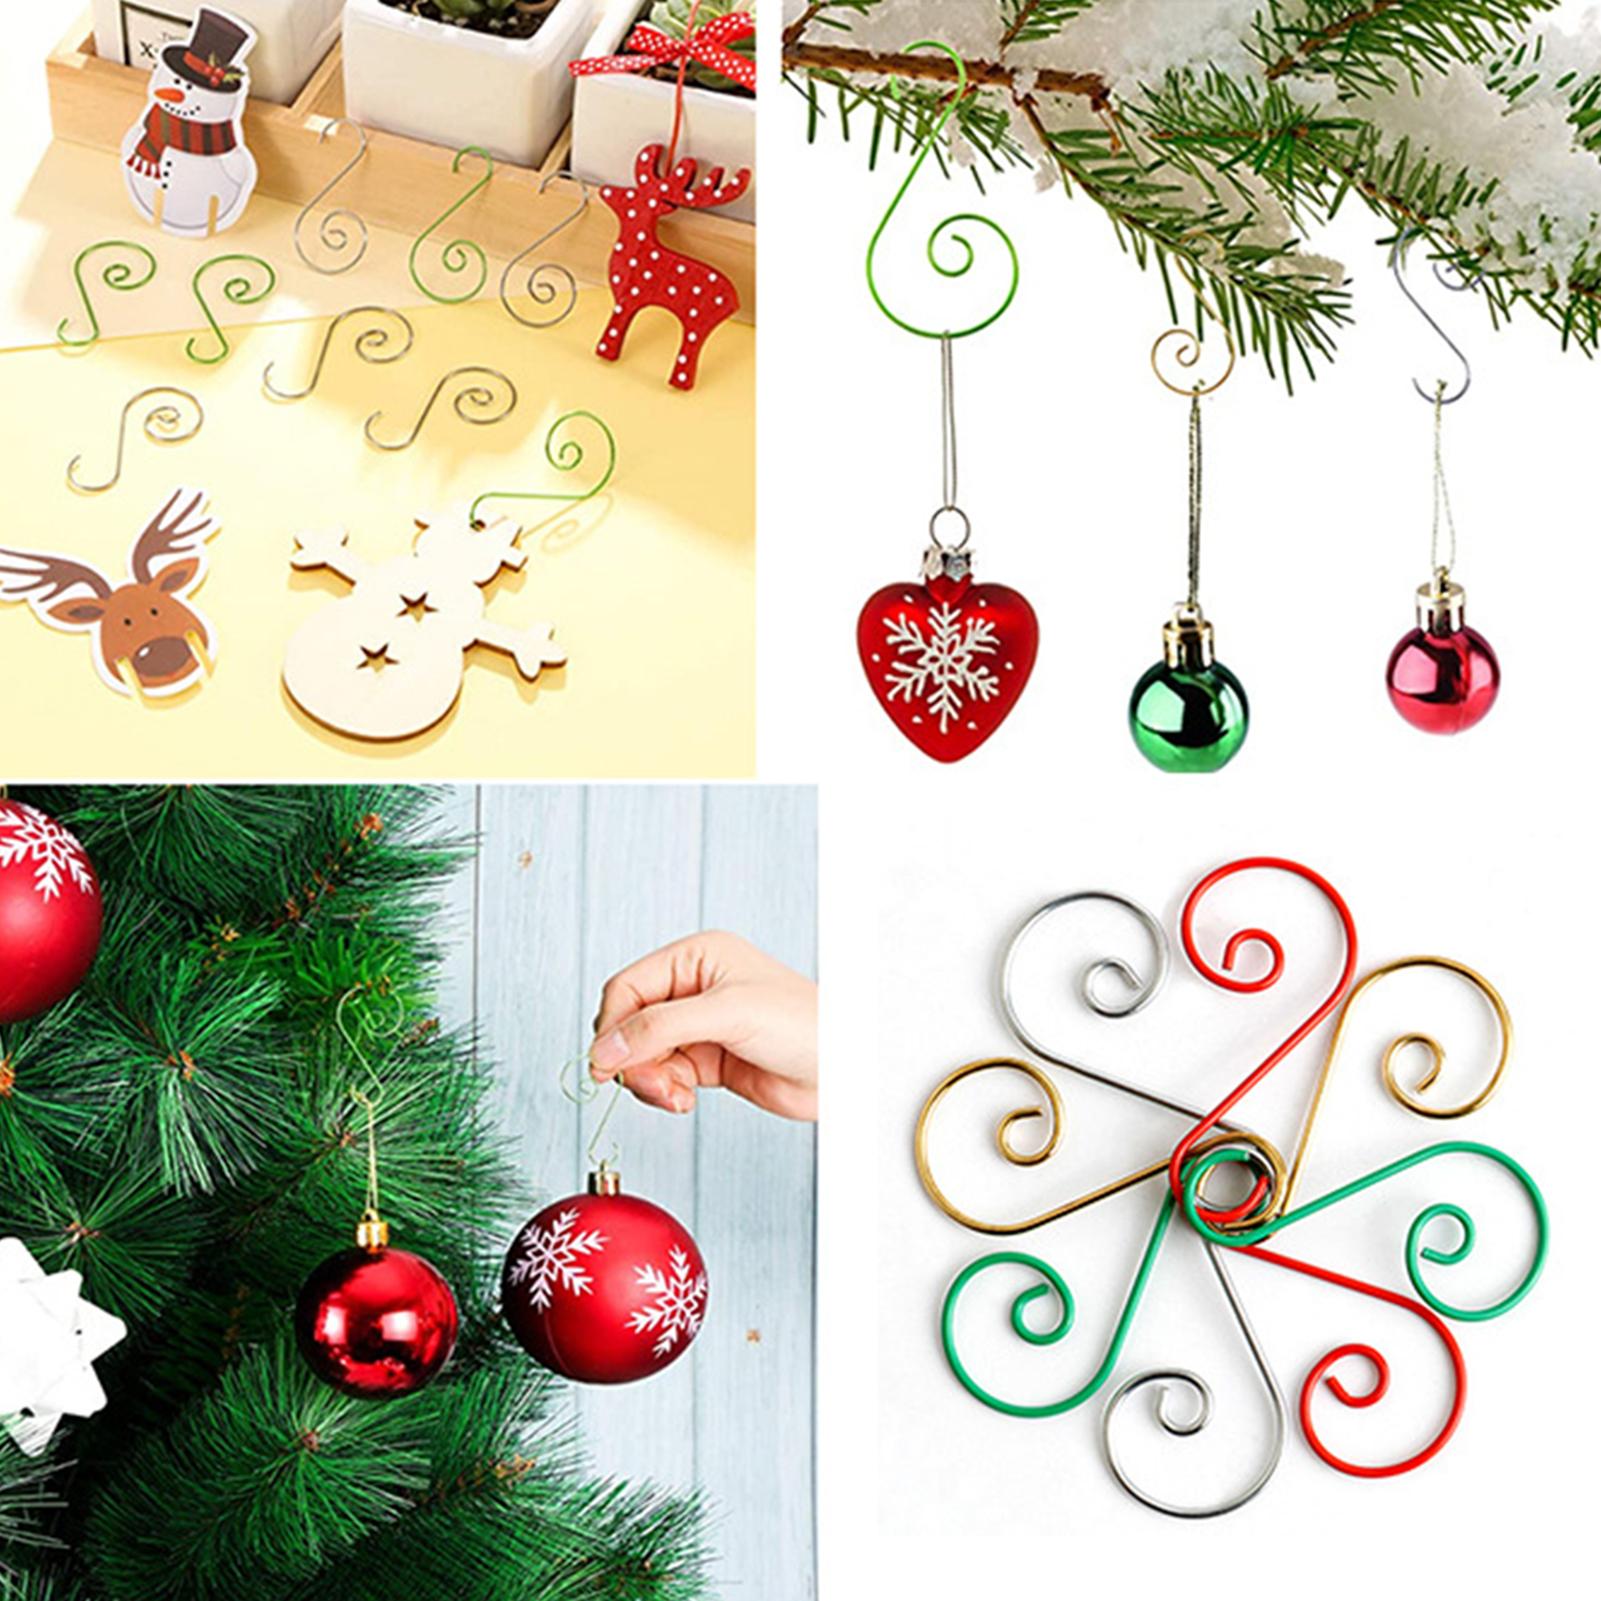 4 Kleuren 20Pcs Ornament Haken Rvs S-Vormige Hangers Voor Kerst Decoratie 4.5Cm Boom Multi Purpose Jaar